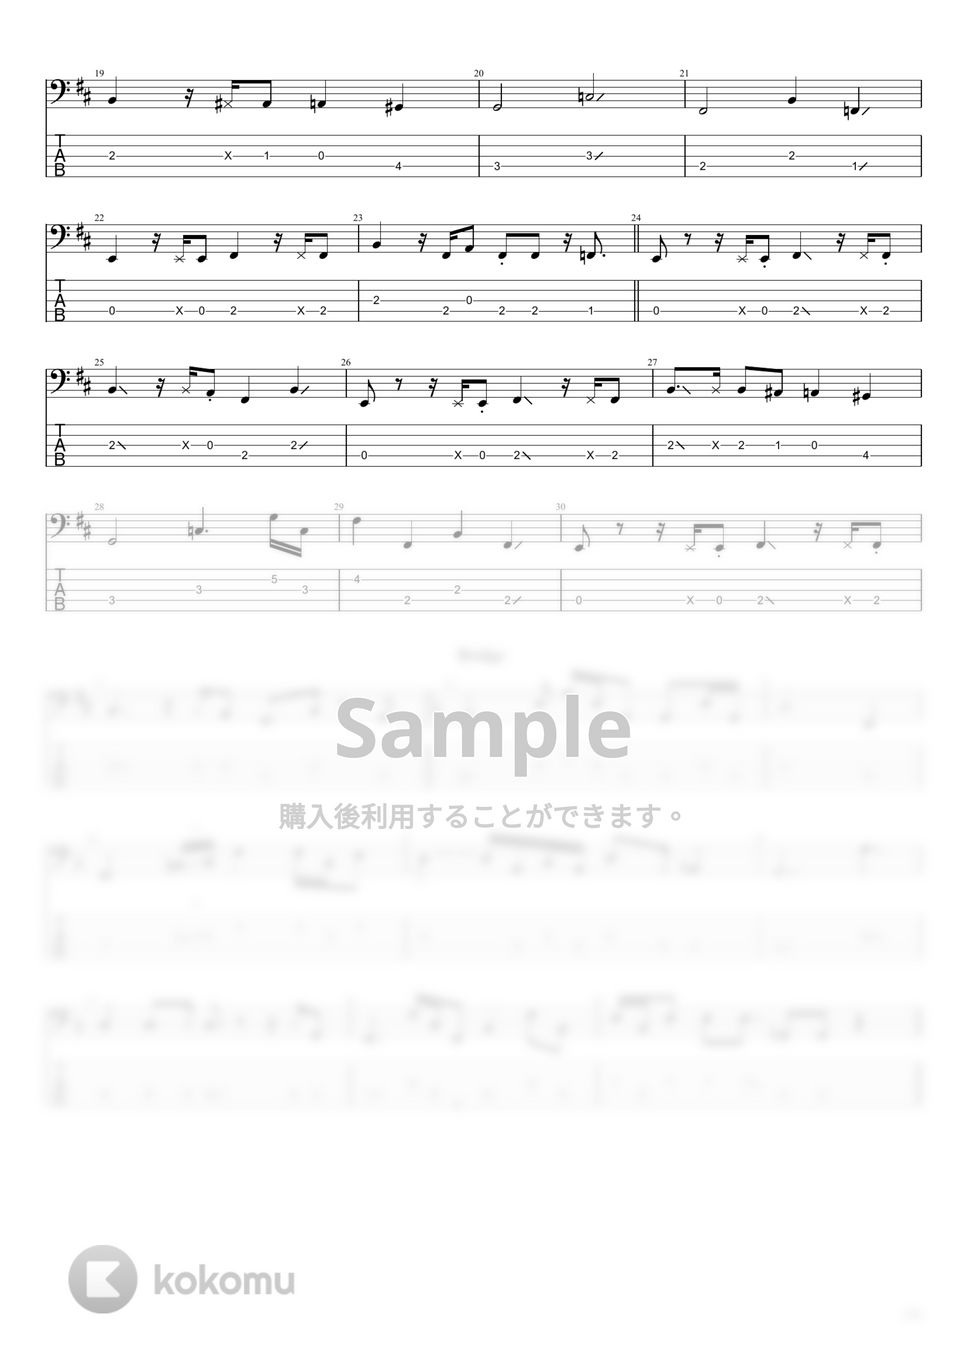 藤井風 - 何なんw (5弦) by まっきん